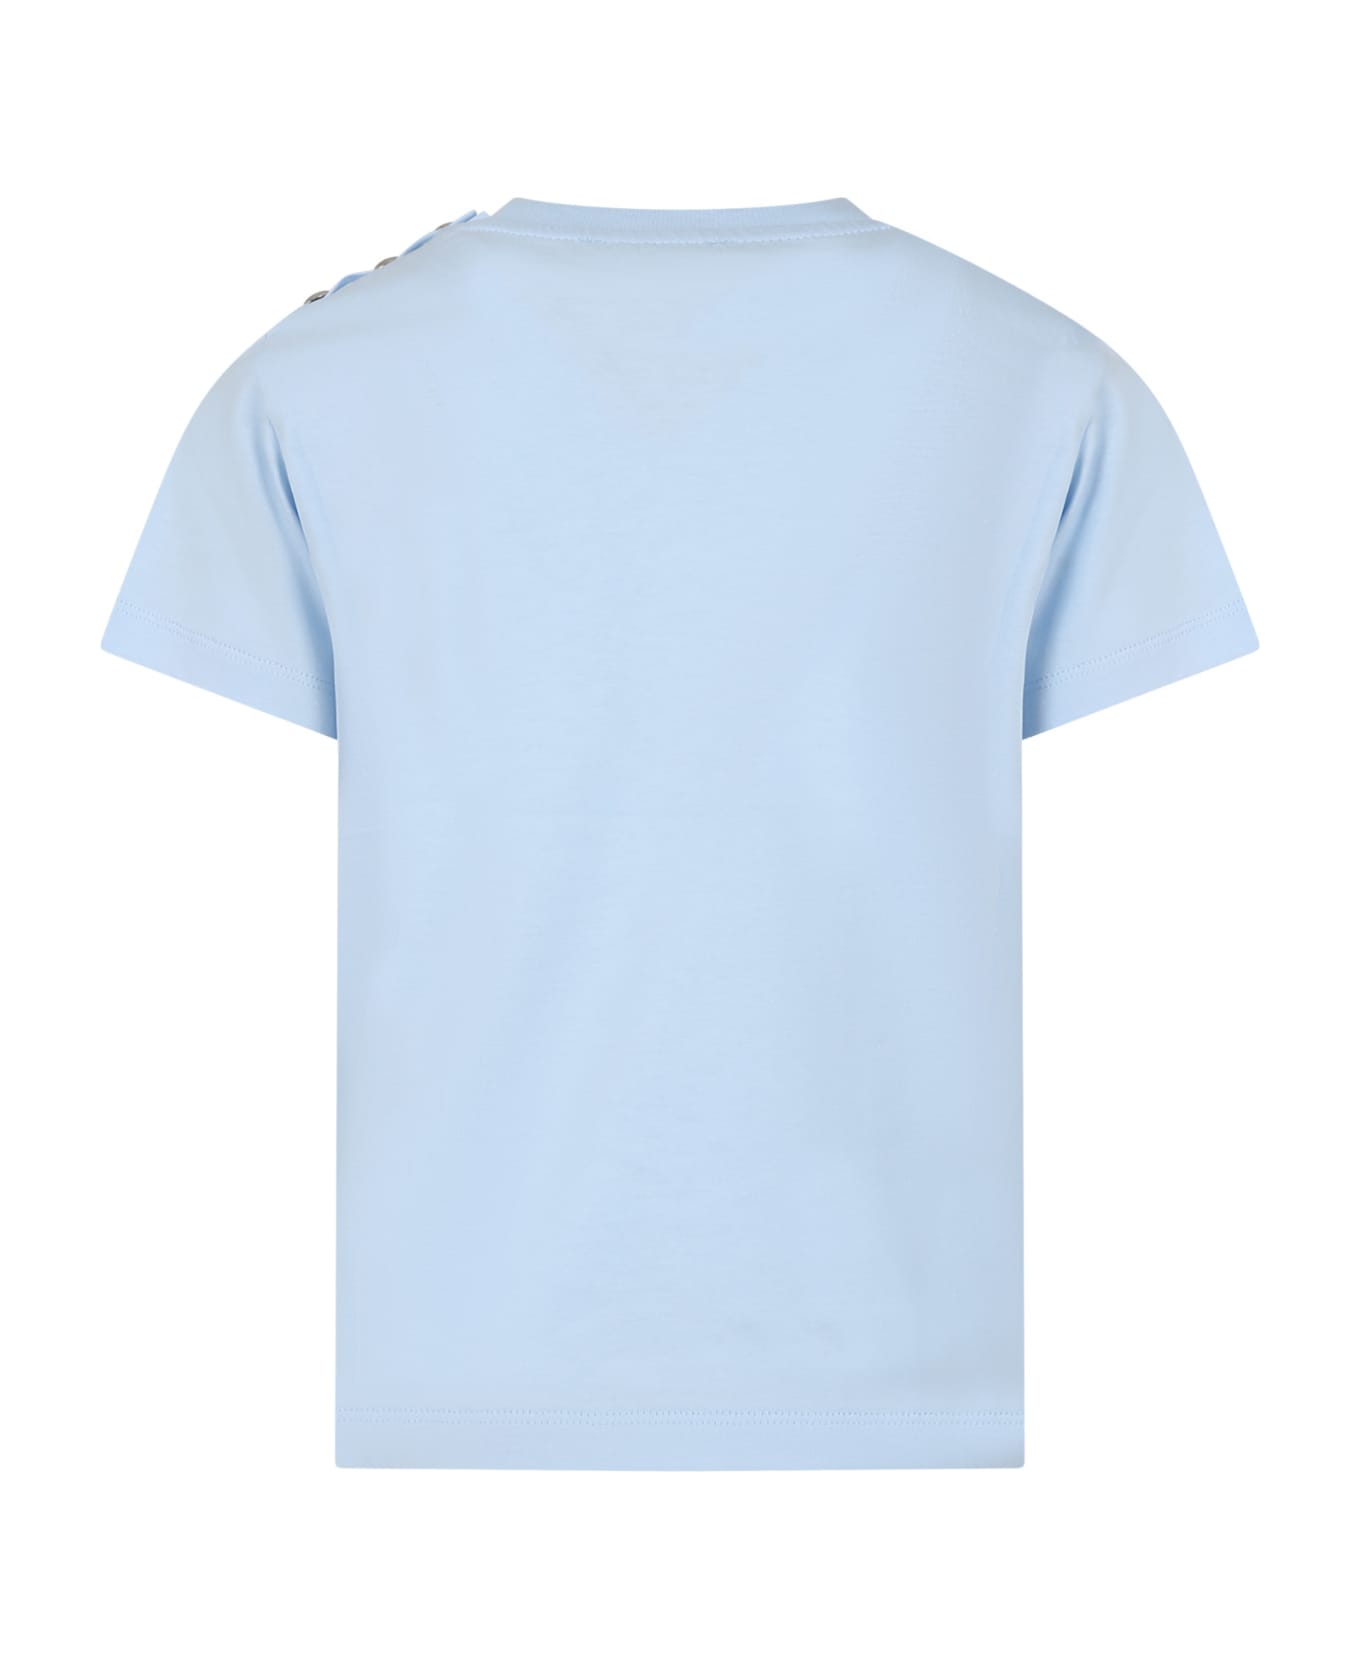 Balmain Light Blue T-shirt For Kids With Logo - Light Blue